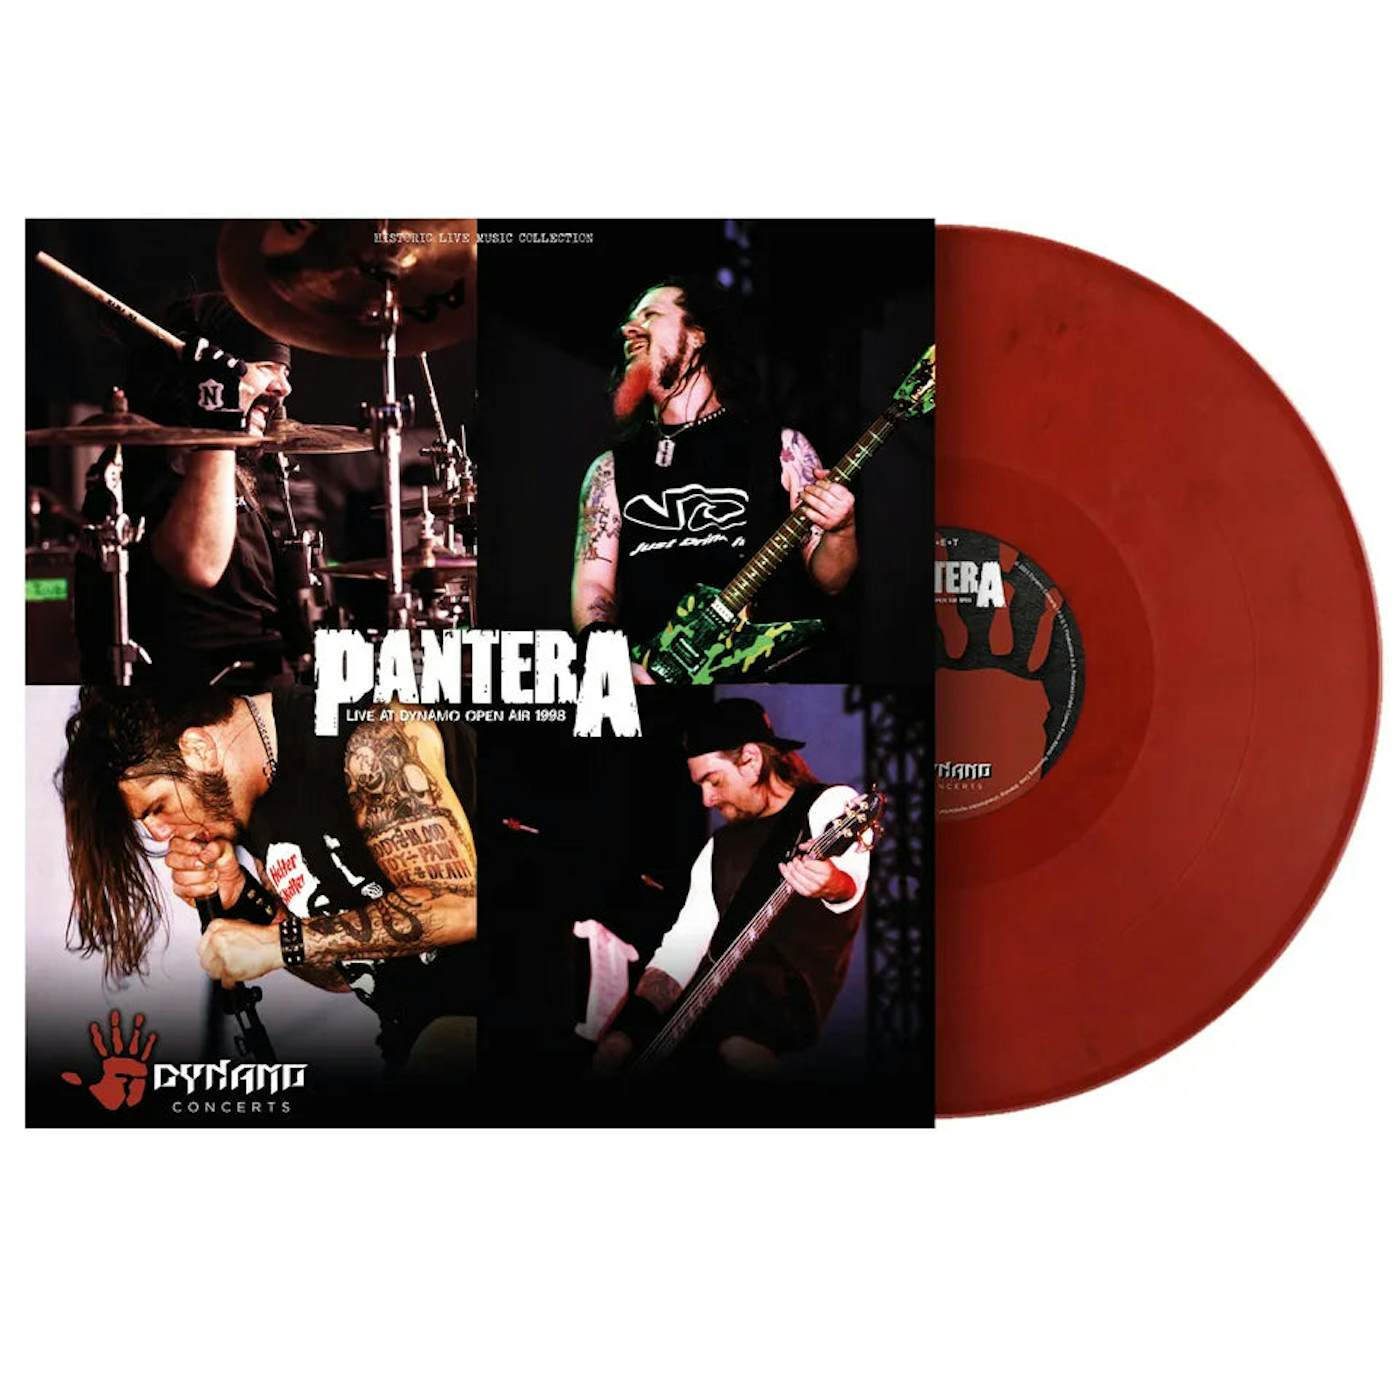 Pantera - Live At Dynamo (Vinyl)